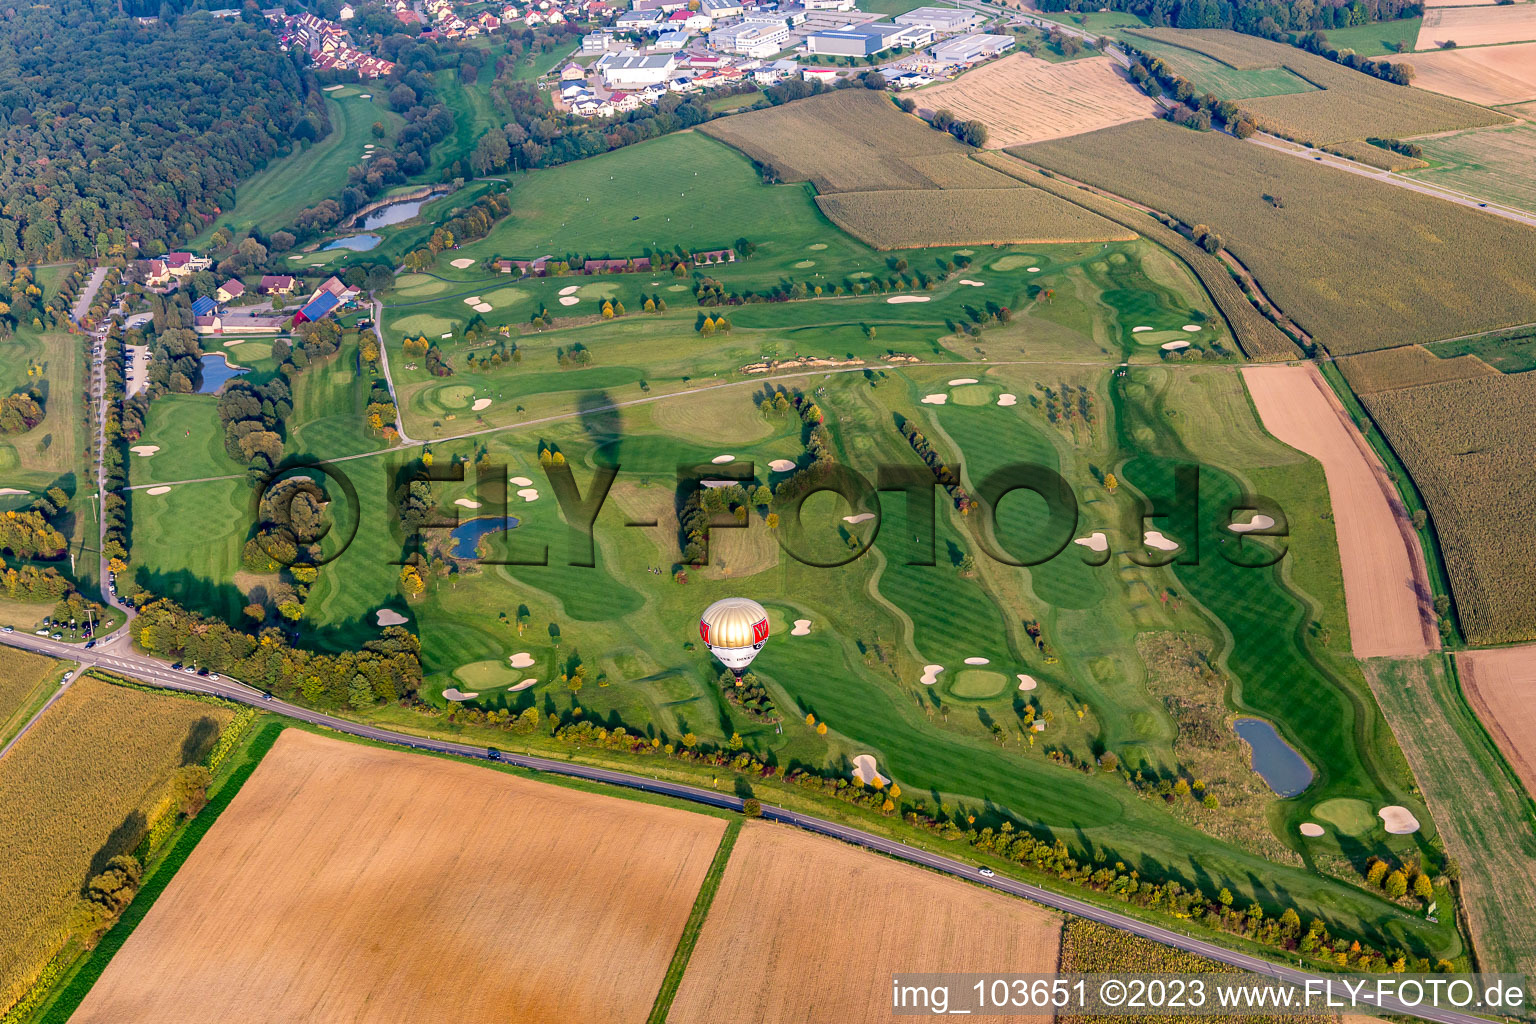 Vue aérienne de Kalshäuser Hof Golf Club de golf de Pforzheim à le quartier Dürrn in Ölbronn-Dürrn dans le département Bade-Wurtemberg, Allemagne